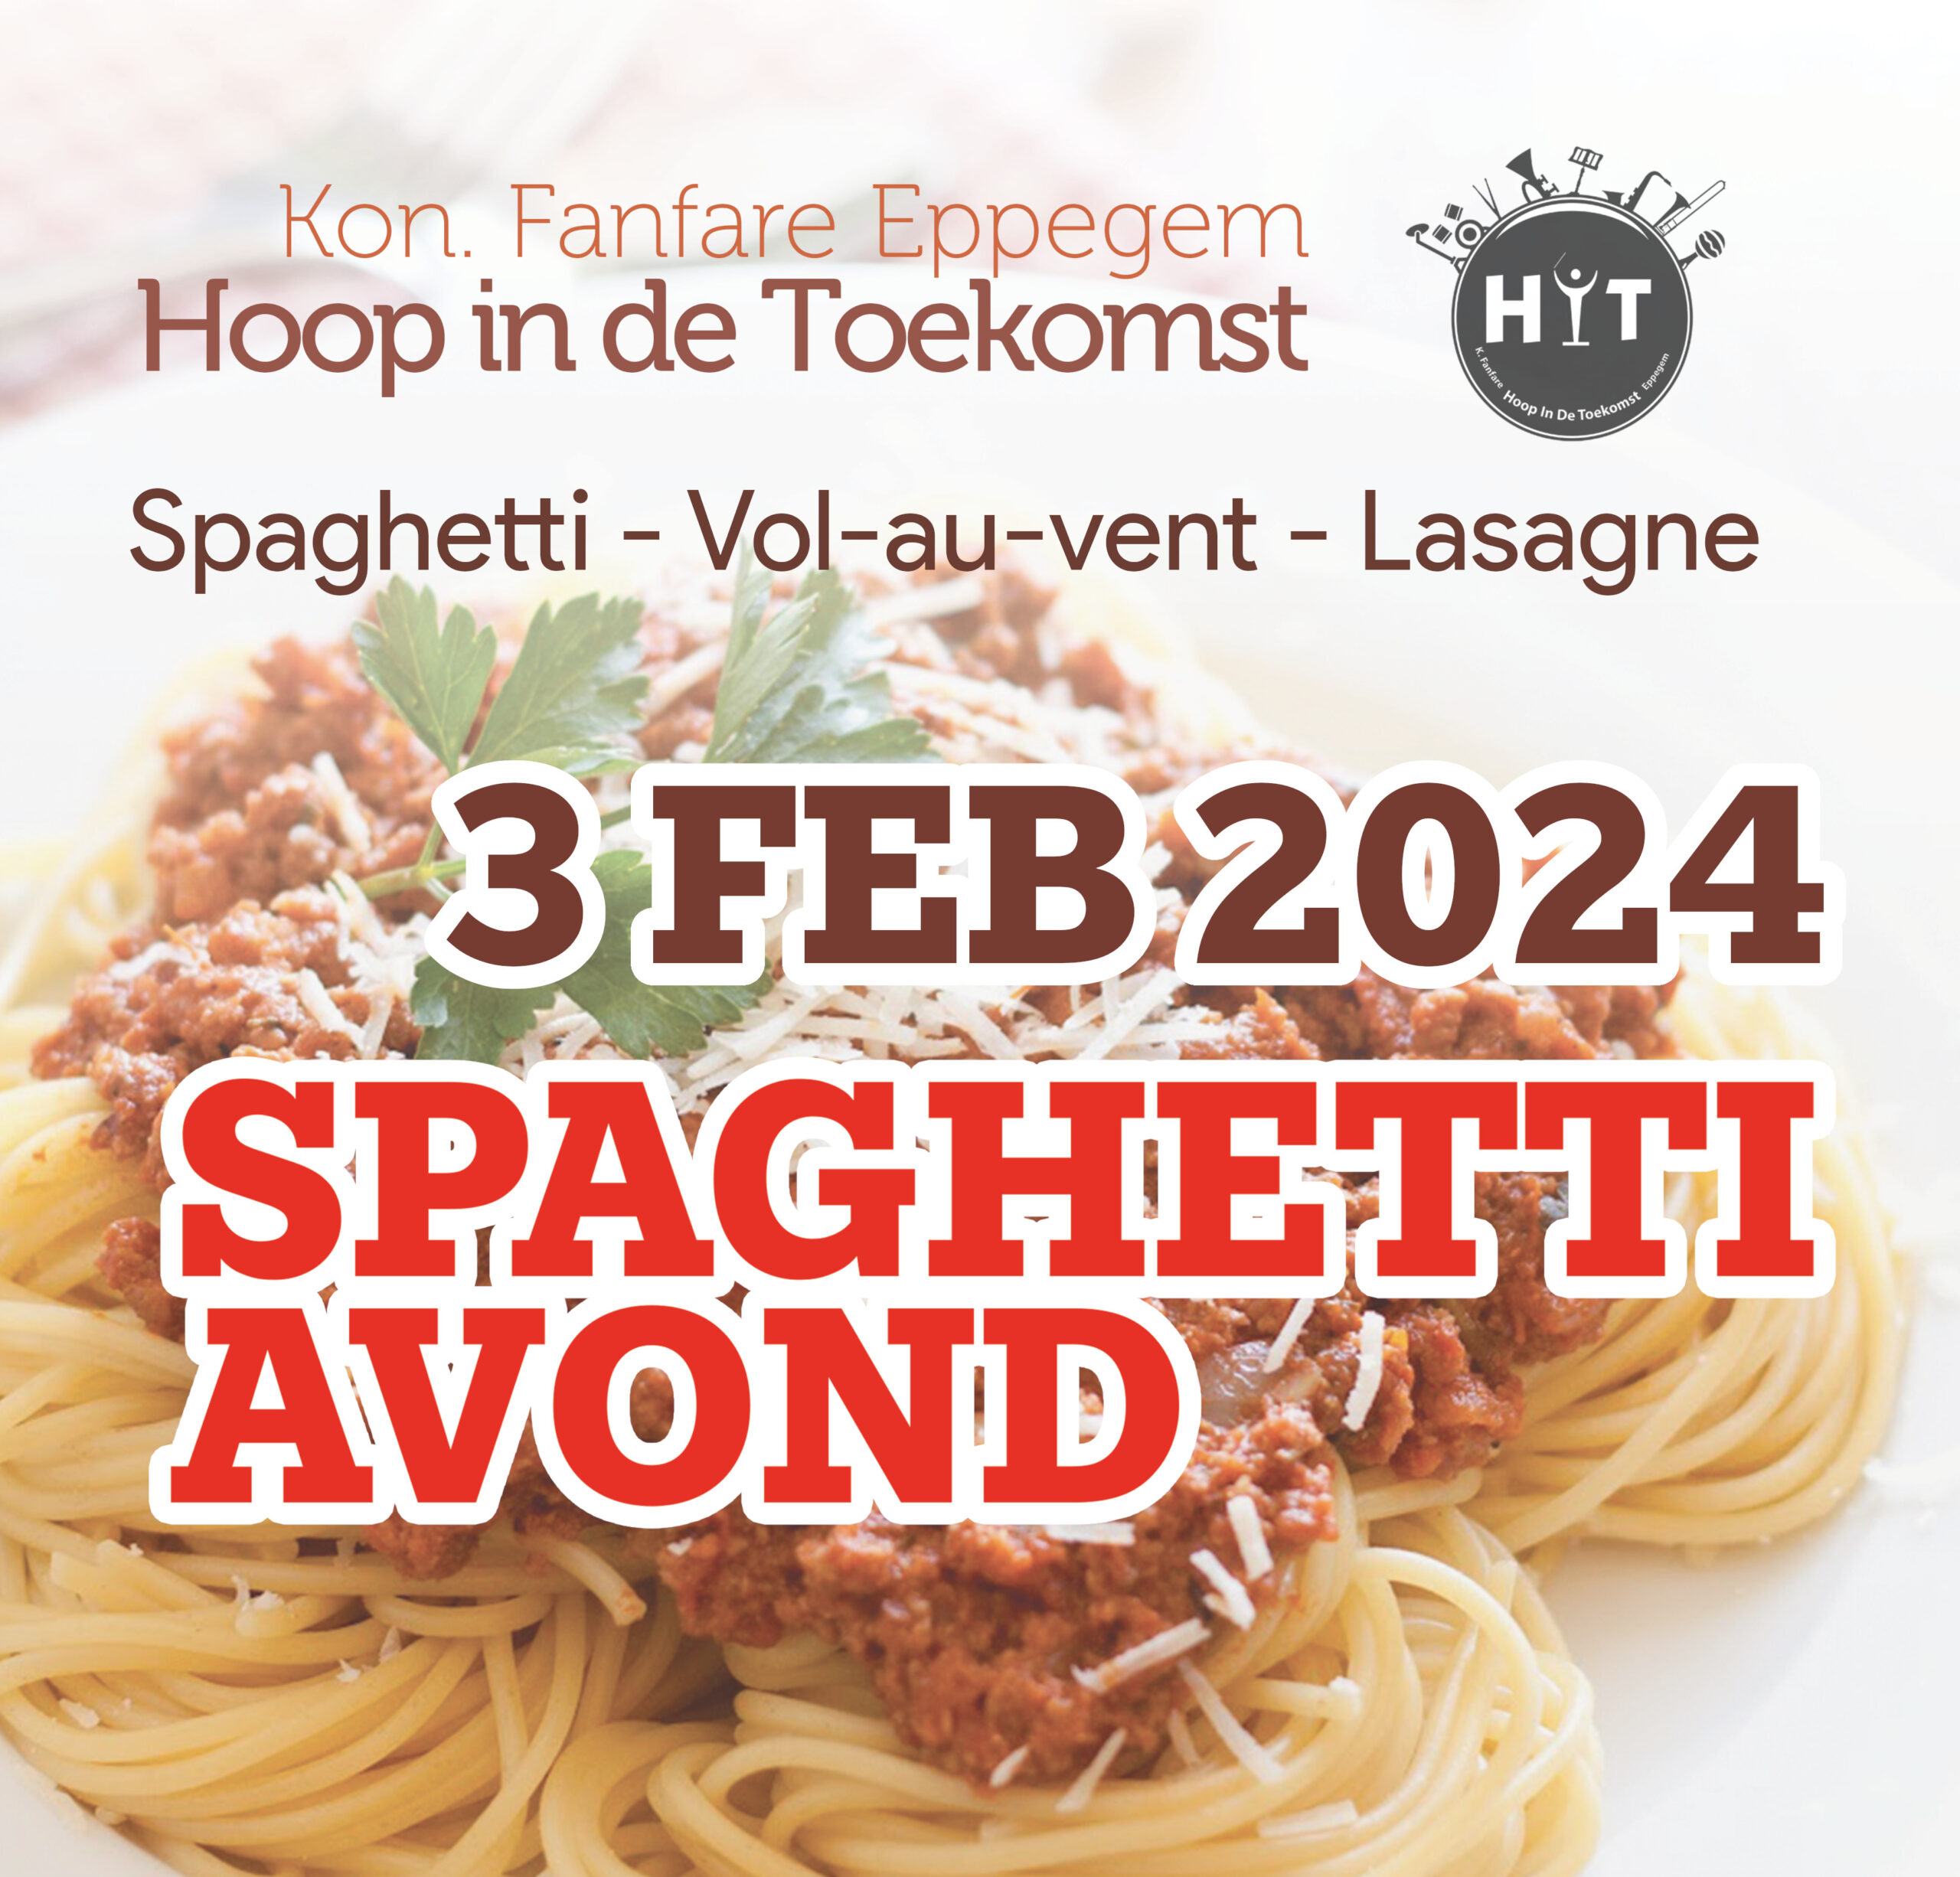 Spaghetti avond 2024 eppegem fanfare hoop in de toekomst